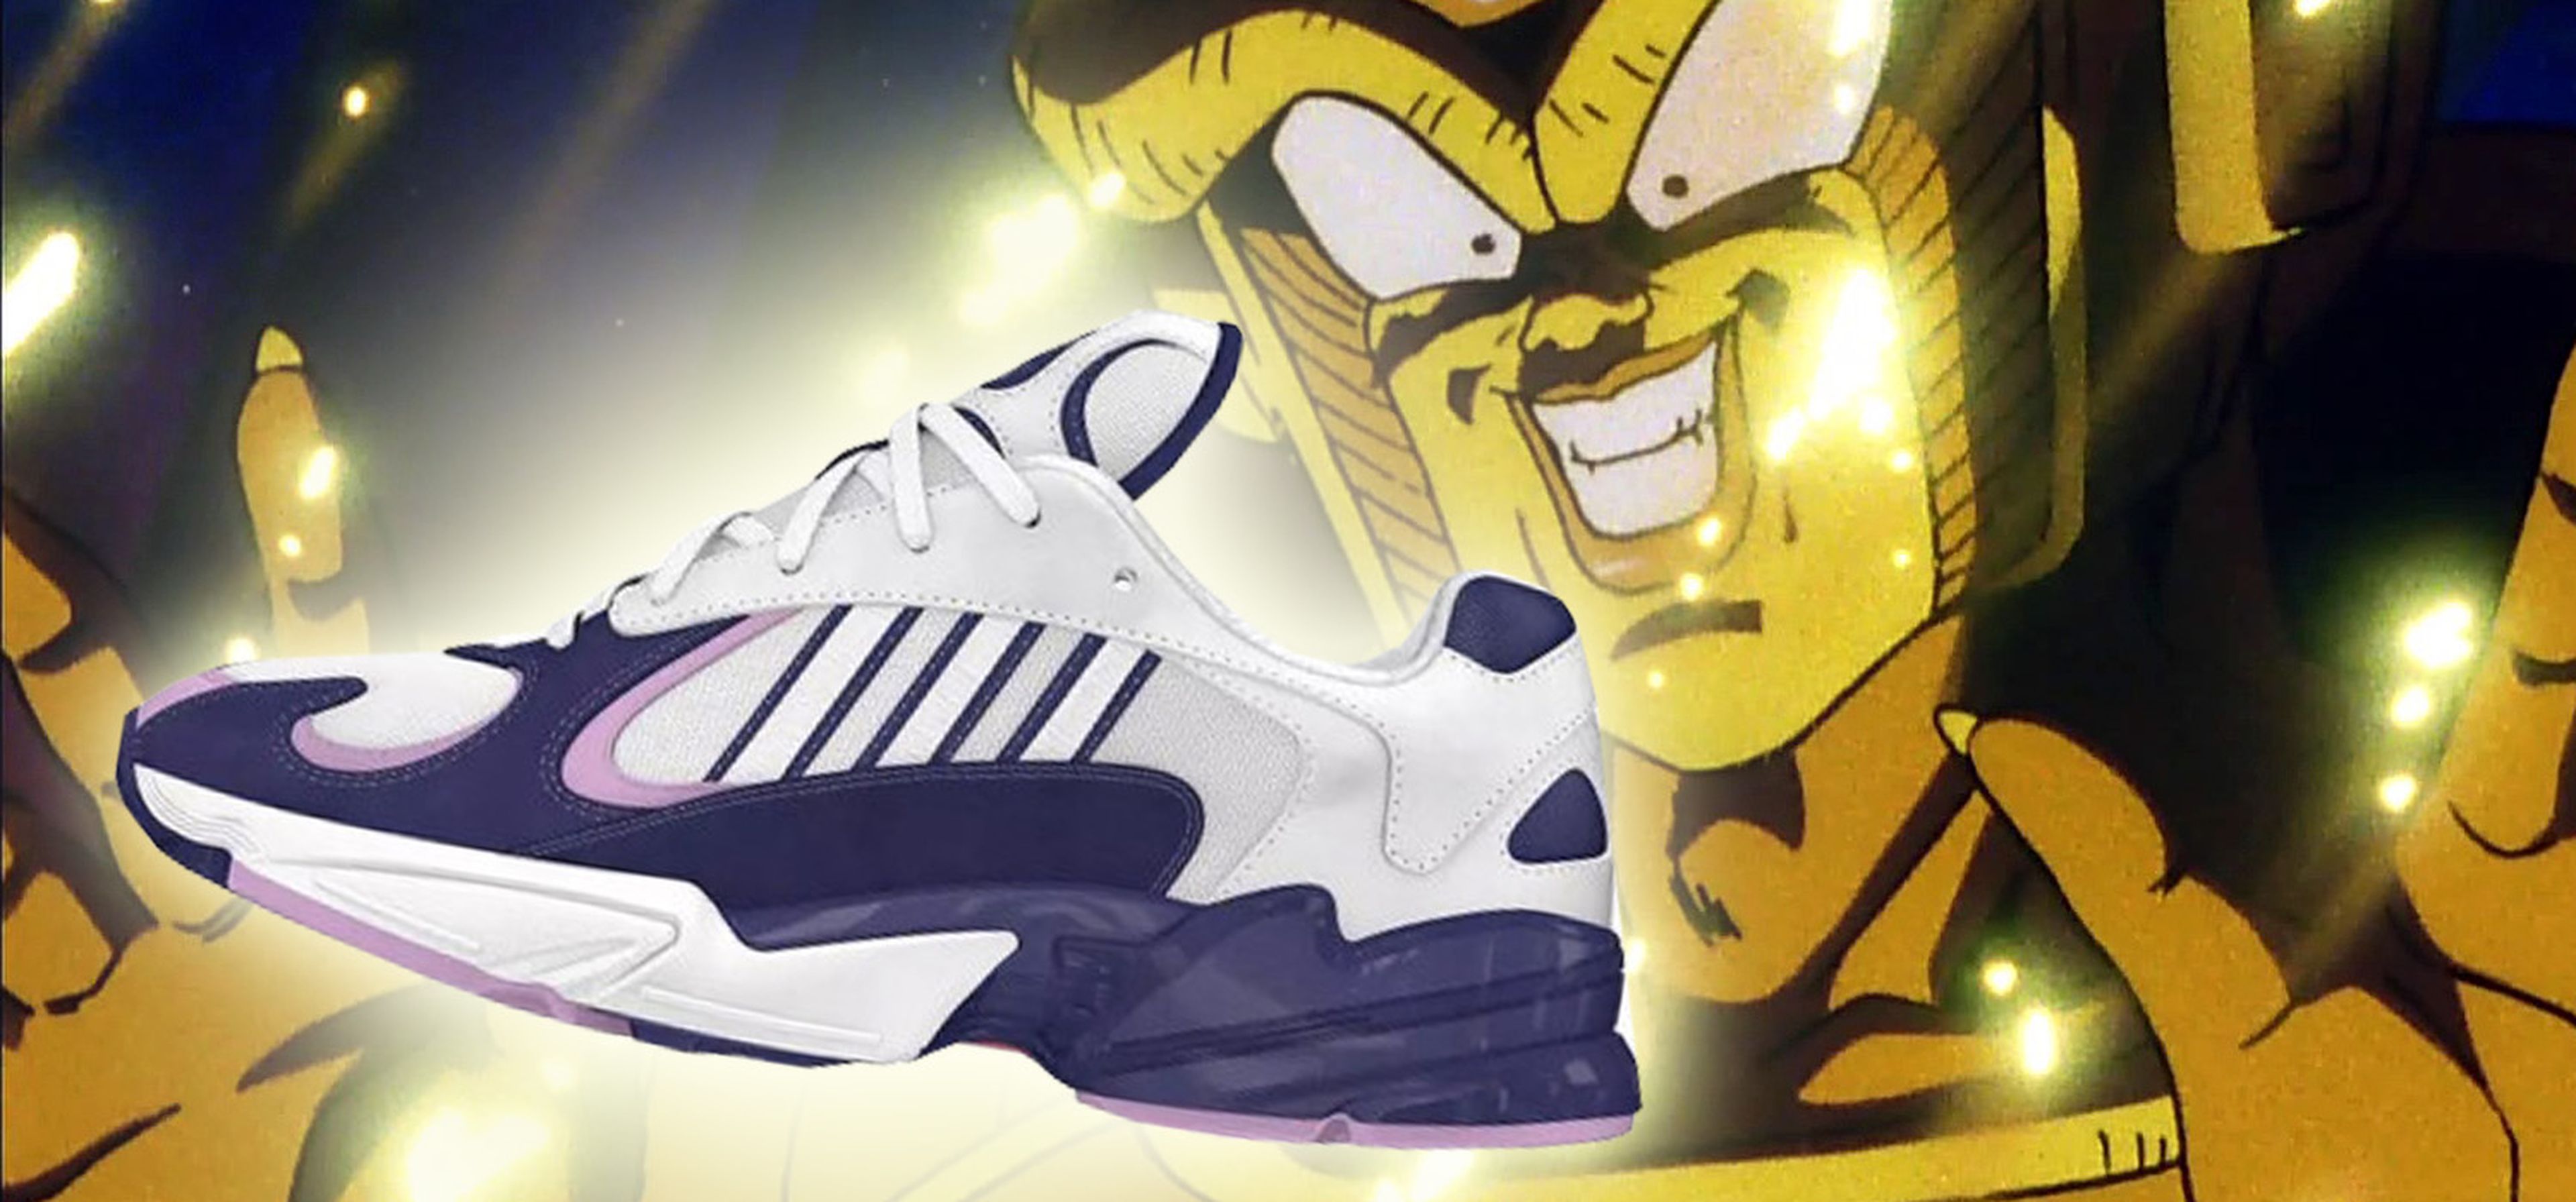 Ridículo Adjuntar a Ficticio Dragon Ball Z - Adidas lanzará las zapatillas oficiales de la serie | Hobby  Consolas